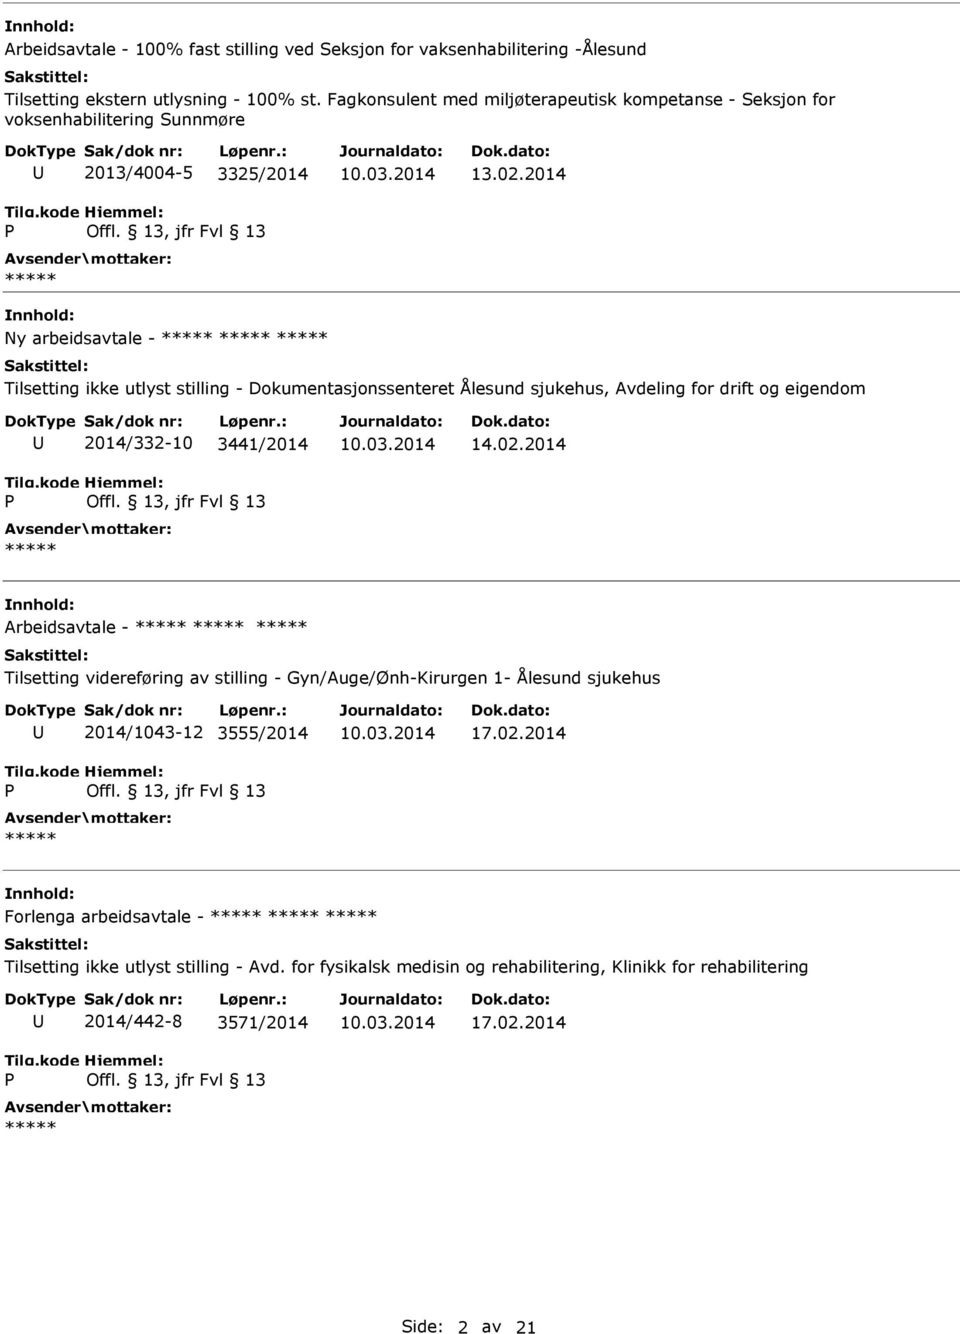 2014 Ny arbeidsavtale - Tilsetting ikke utlyst stilling - Dokumentasjonssenteret Ålesund sjukehus, Avdeling for drift og eigendom 2014/332-10 3441/2014 14.02.